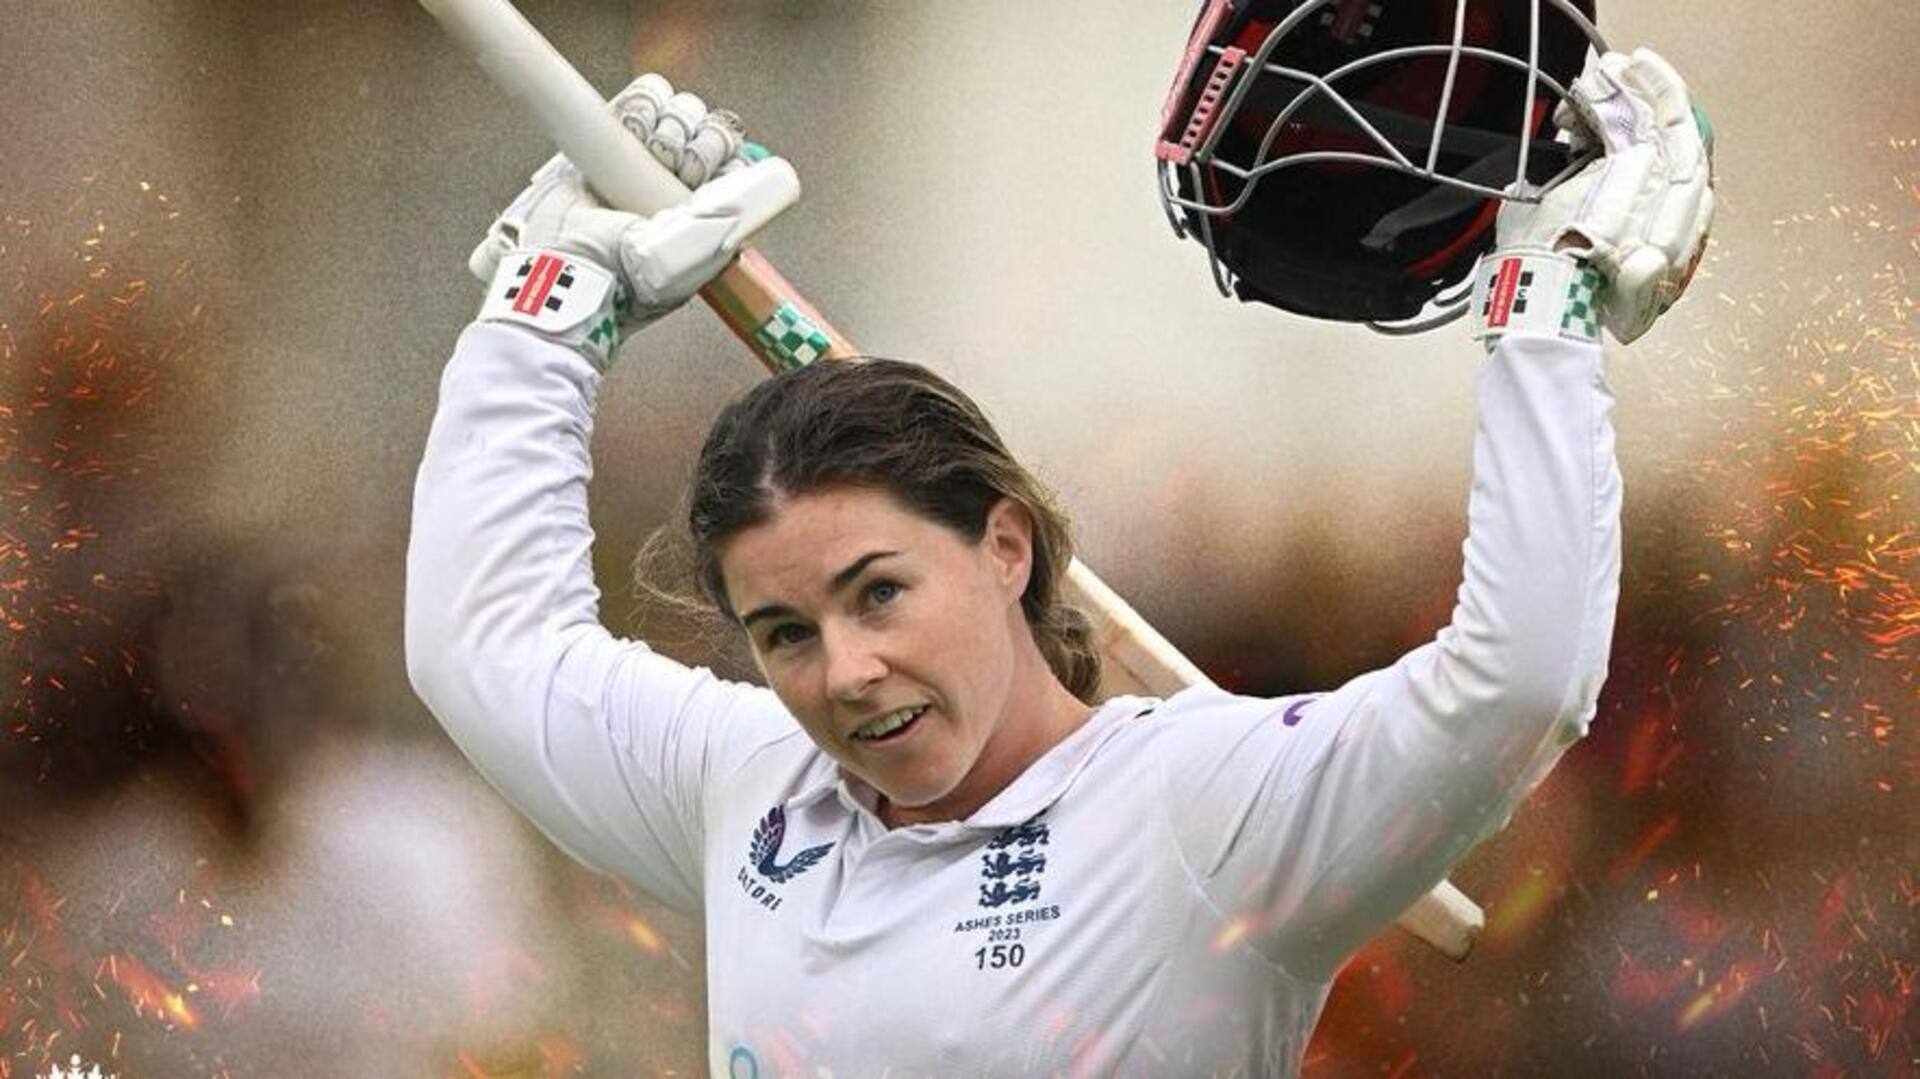 टेस्ट क्रिकेट में दोहरा शतक लगाने वाली 8वीं महिला खिलाड़ी बनीं टैमी ब्यूमोंट, जानिए आंकड़े